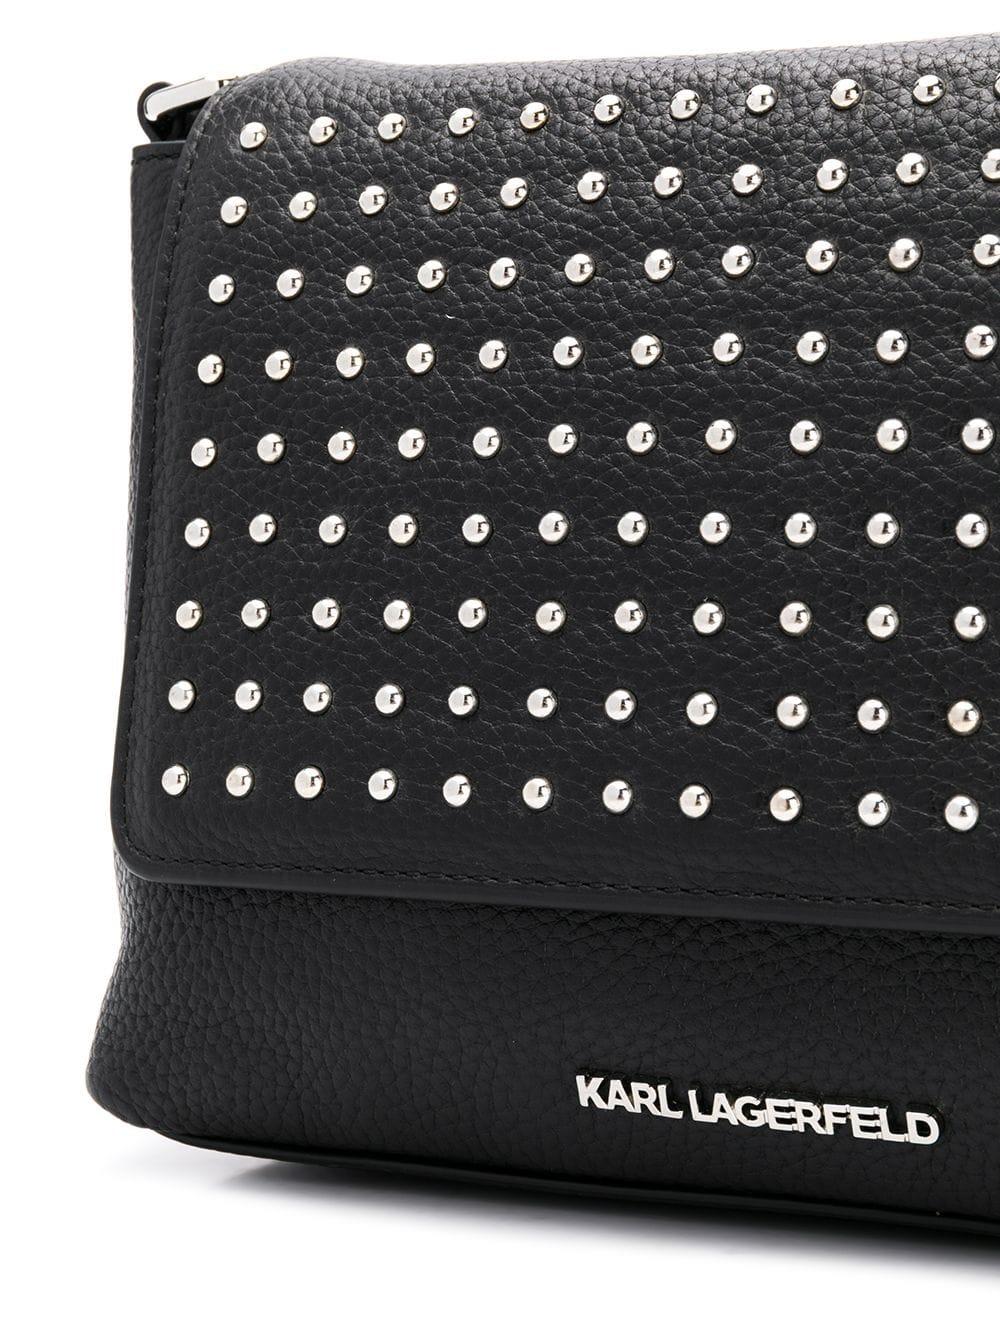 Karl Lagerfeld Damen Umhängetasche Aufbewahrung Nieten Tasche Portemonnaie 